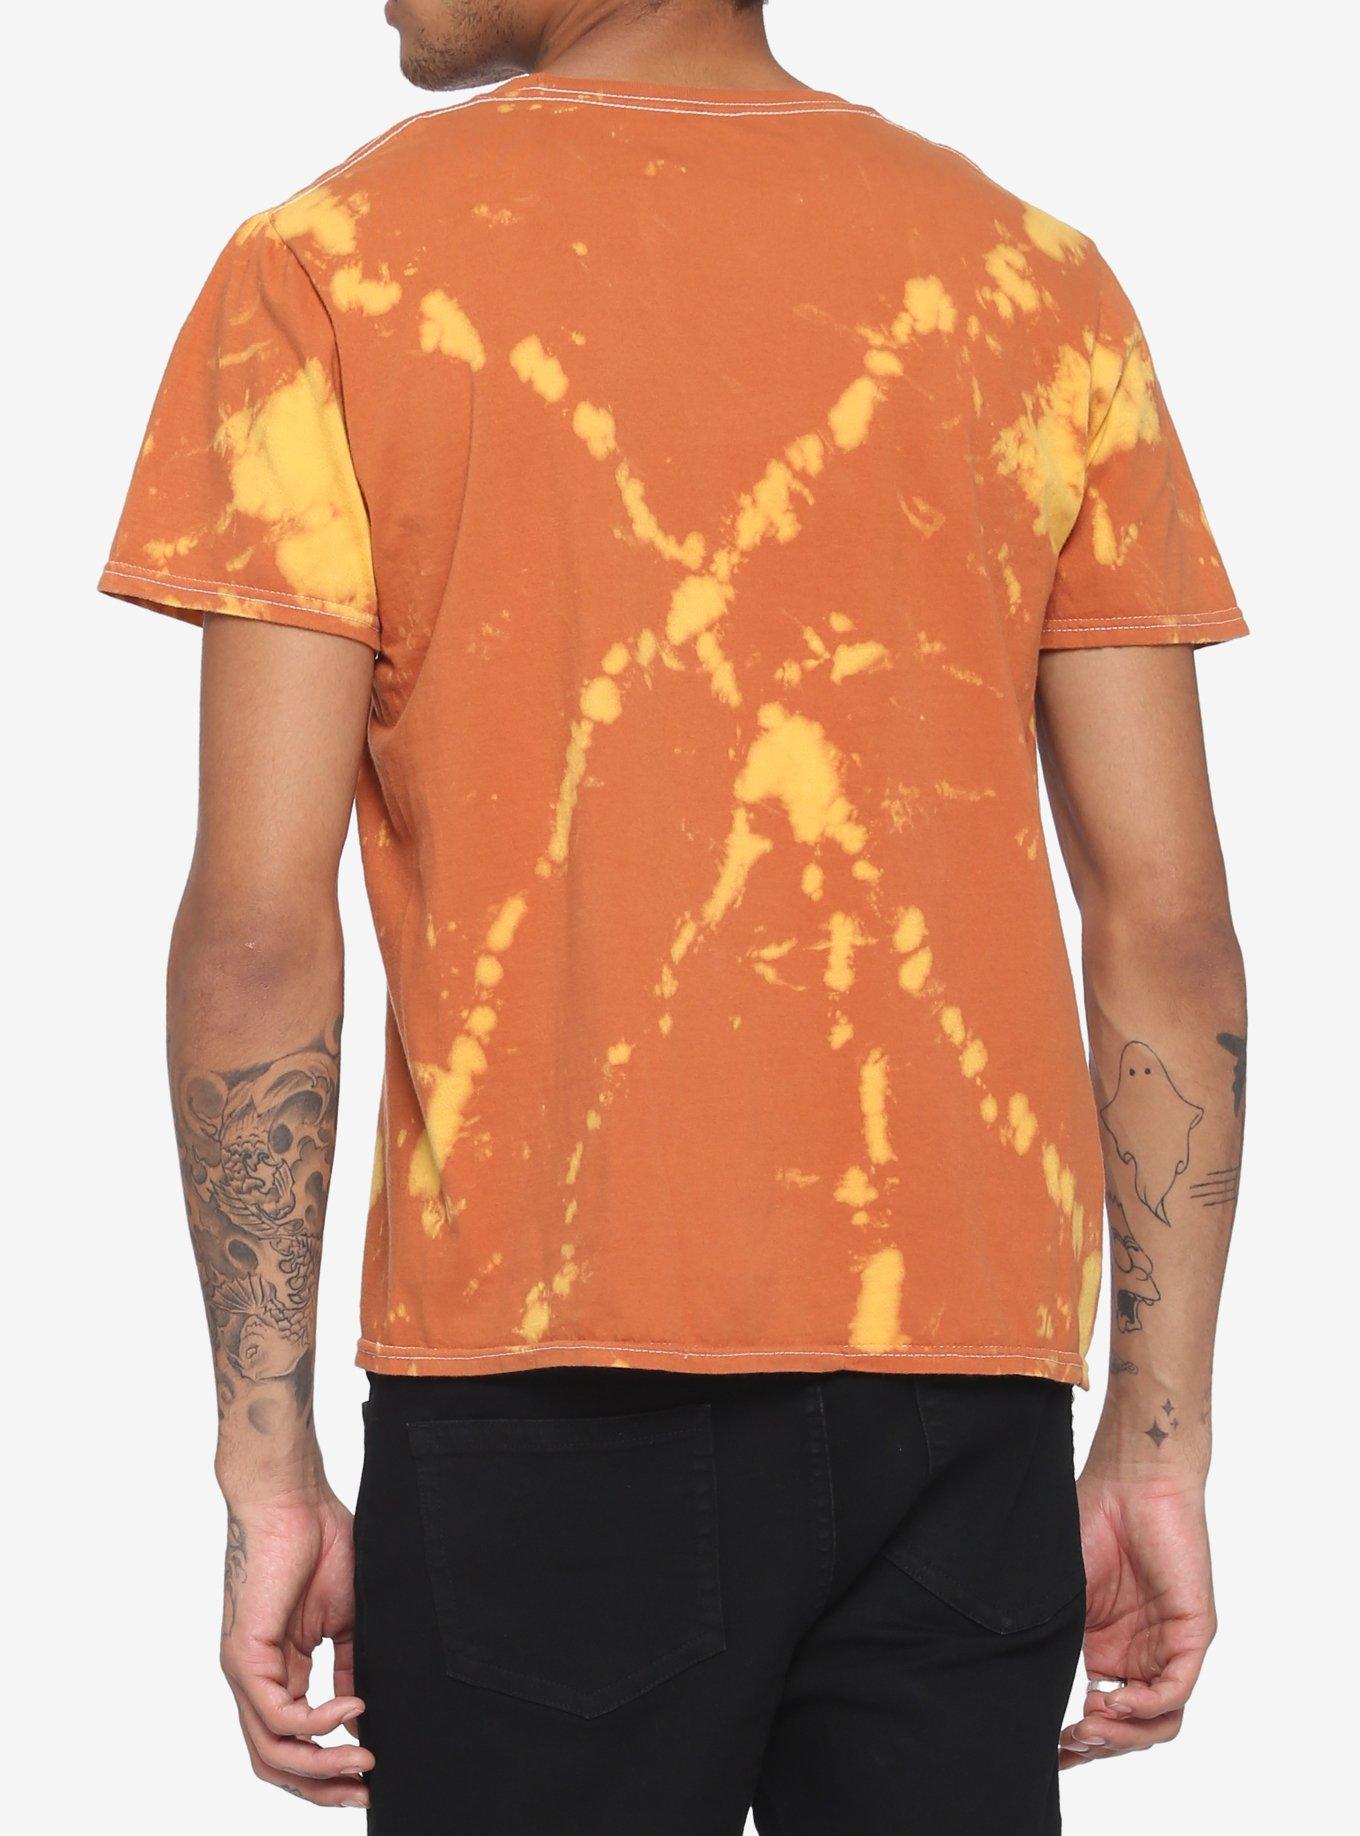 Sublime Sun Bleach T-Shirt, BURNT ORANGE, alternate